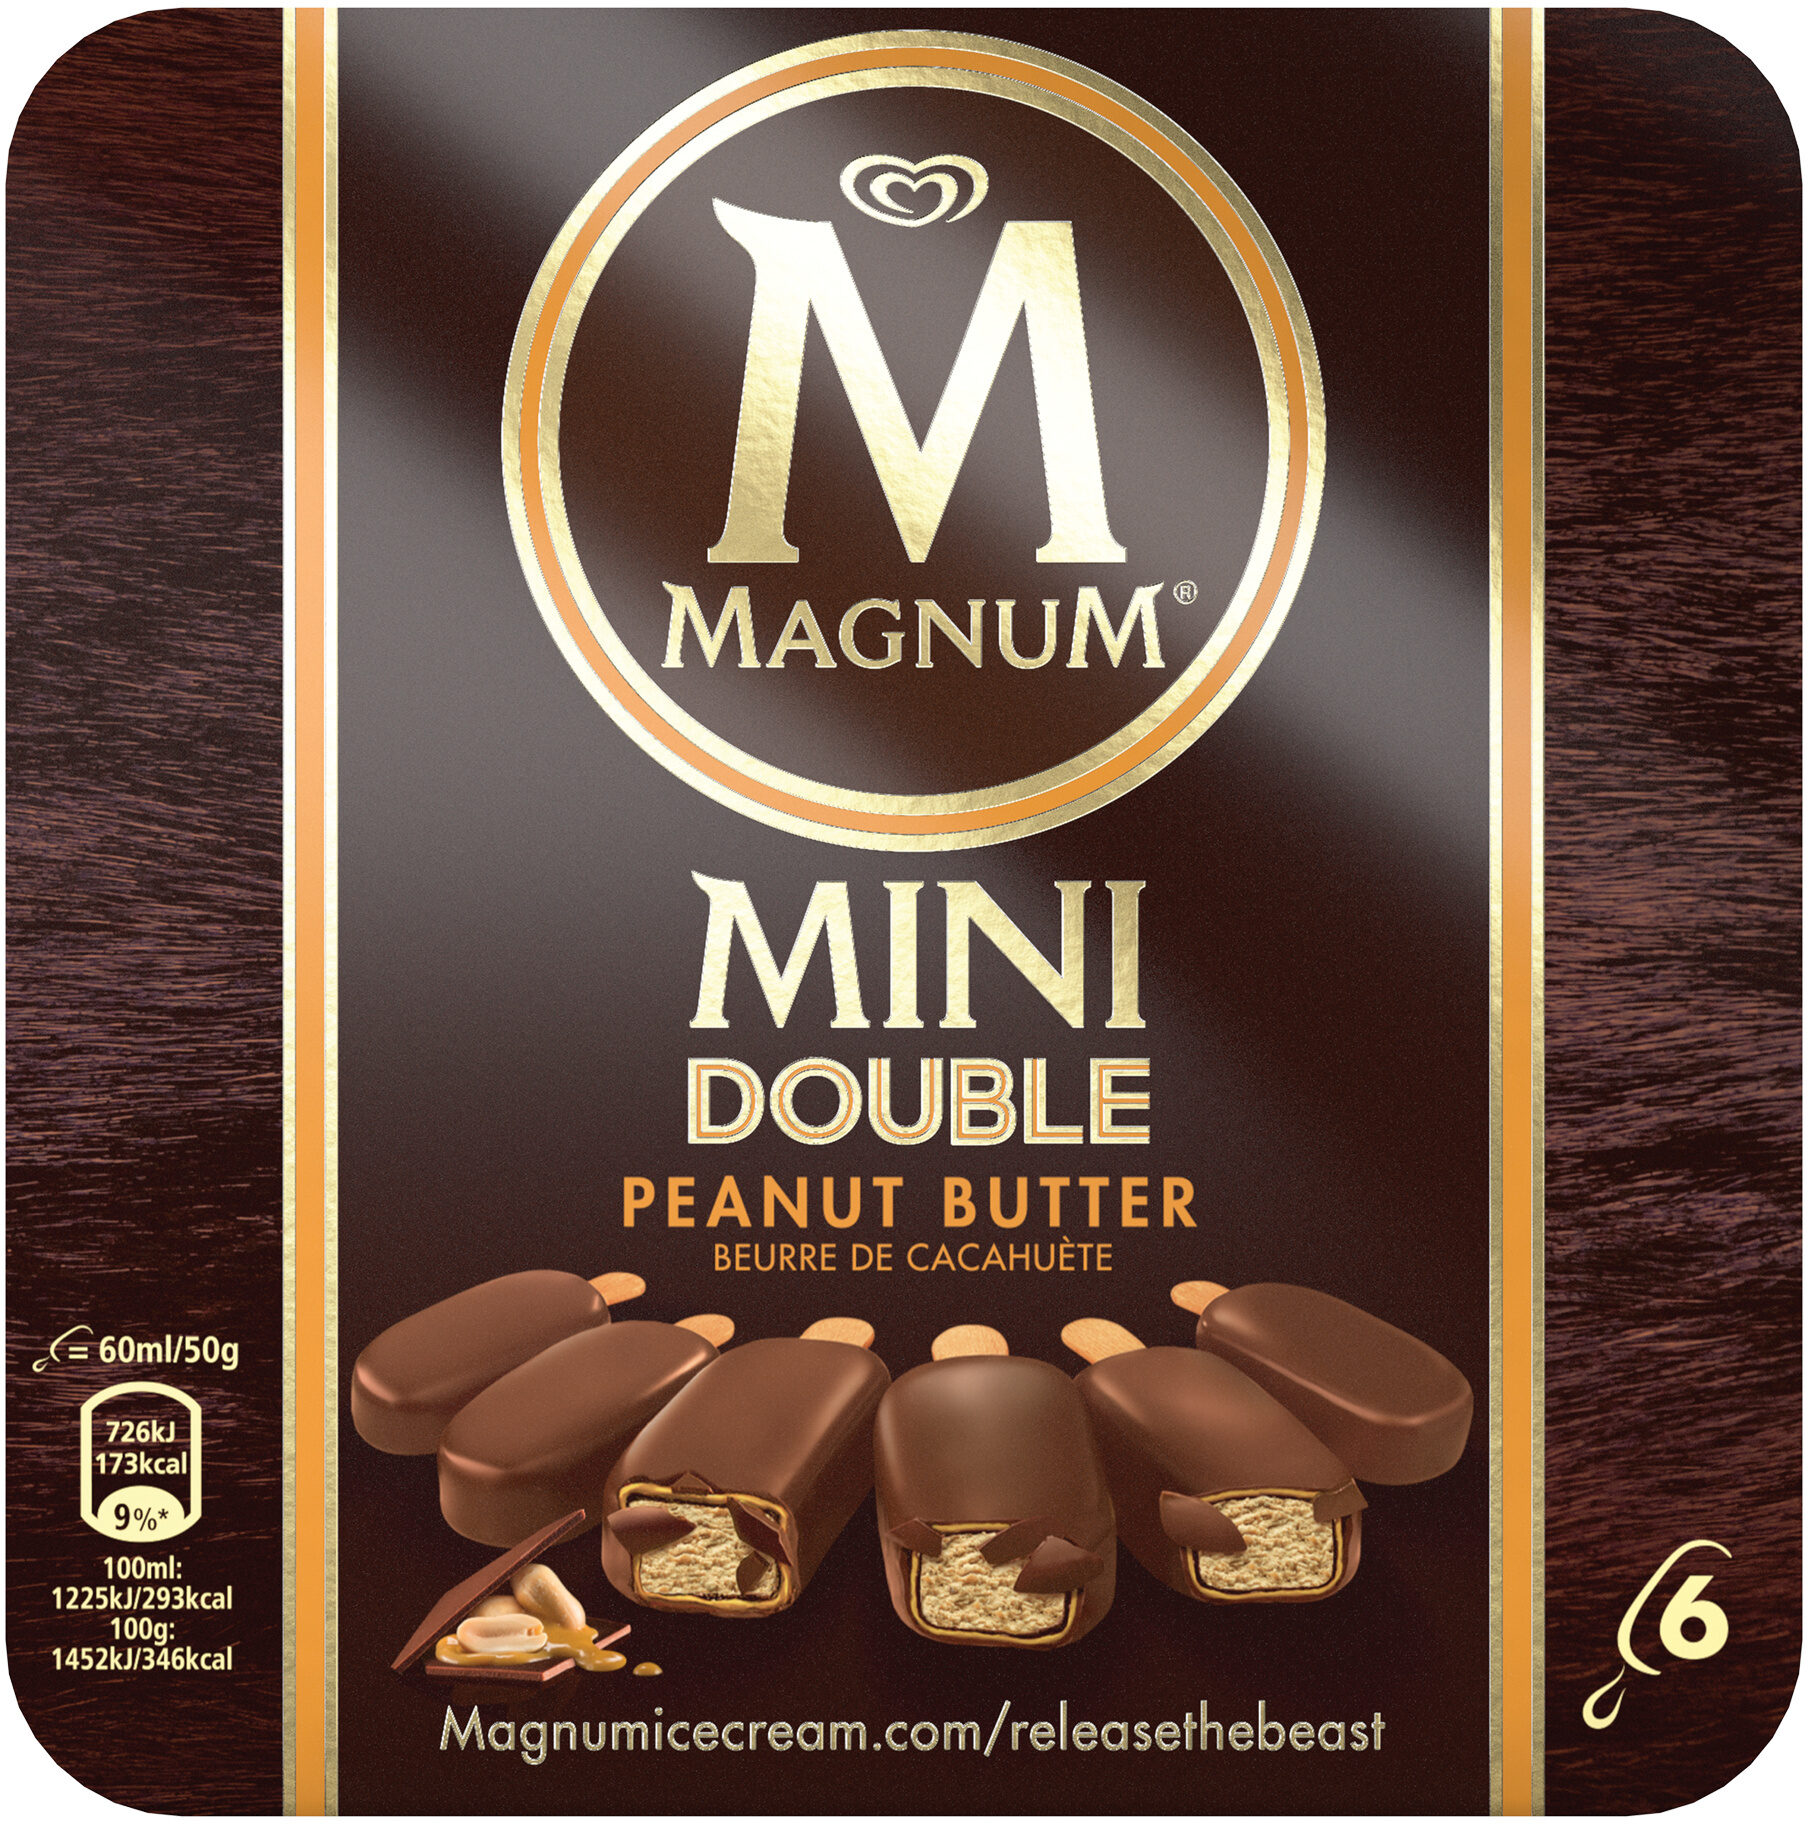 Magnum Glace Batonnet Mini Double Peanut Butter 6x60ml - Producto - fr